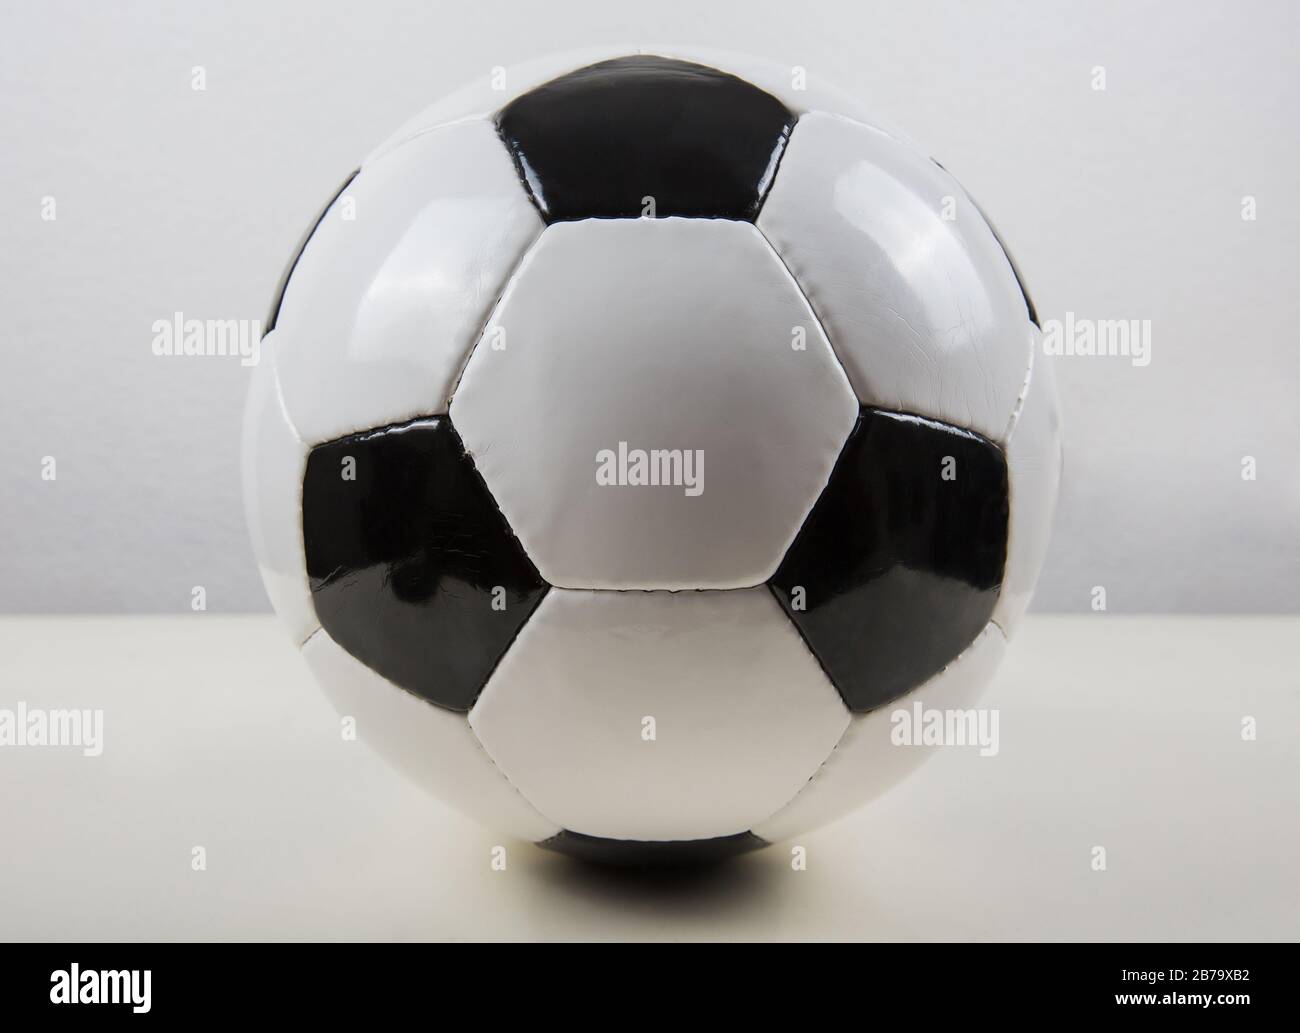 Ballon de football classique sur la table, motif noir et blanc, isolé sur  fond gris. Véritable symbole de ballon de football traditionnel Photo Stock  - Alamy